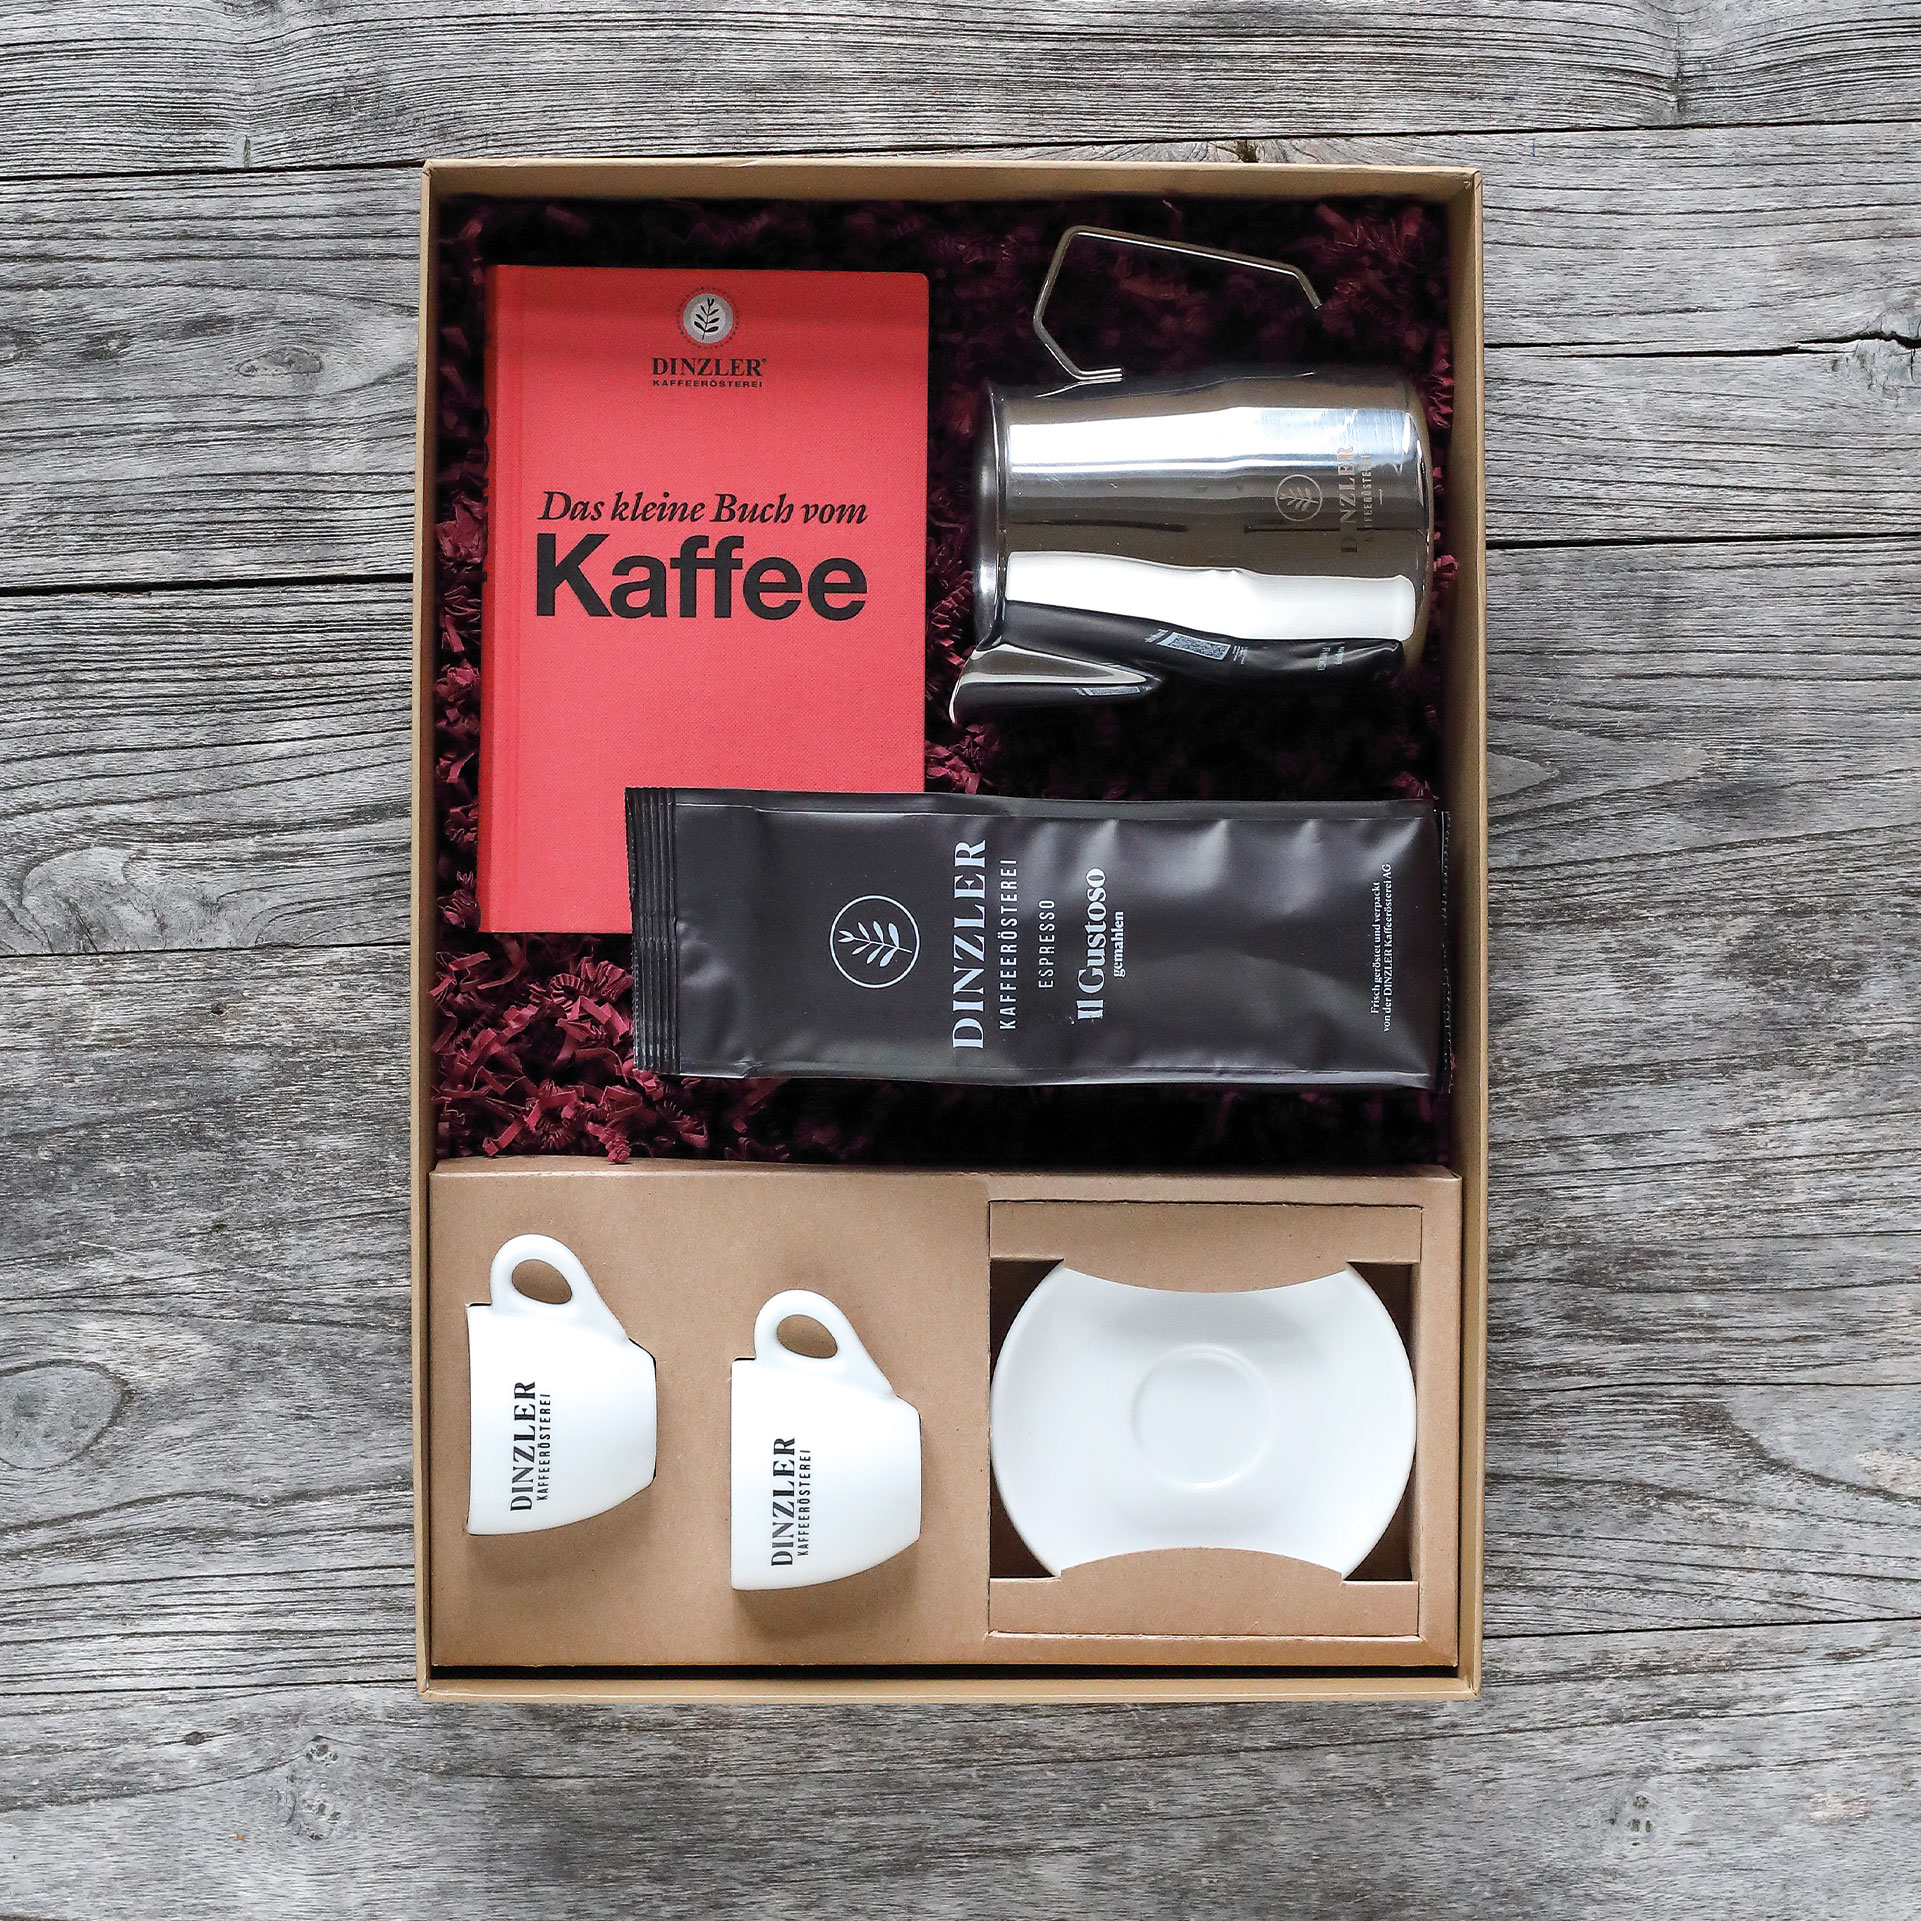 Produktbild DINZLER Geschenkbox "Barista"| DINZLER Kaffeerösterei